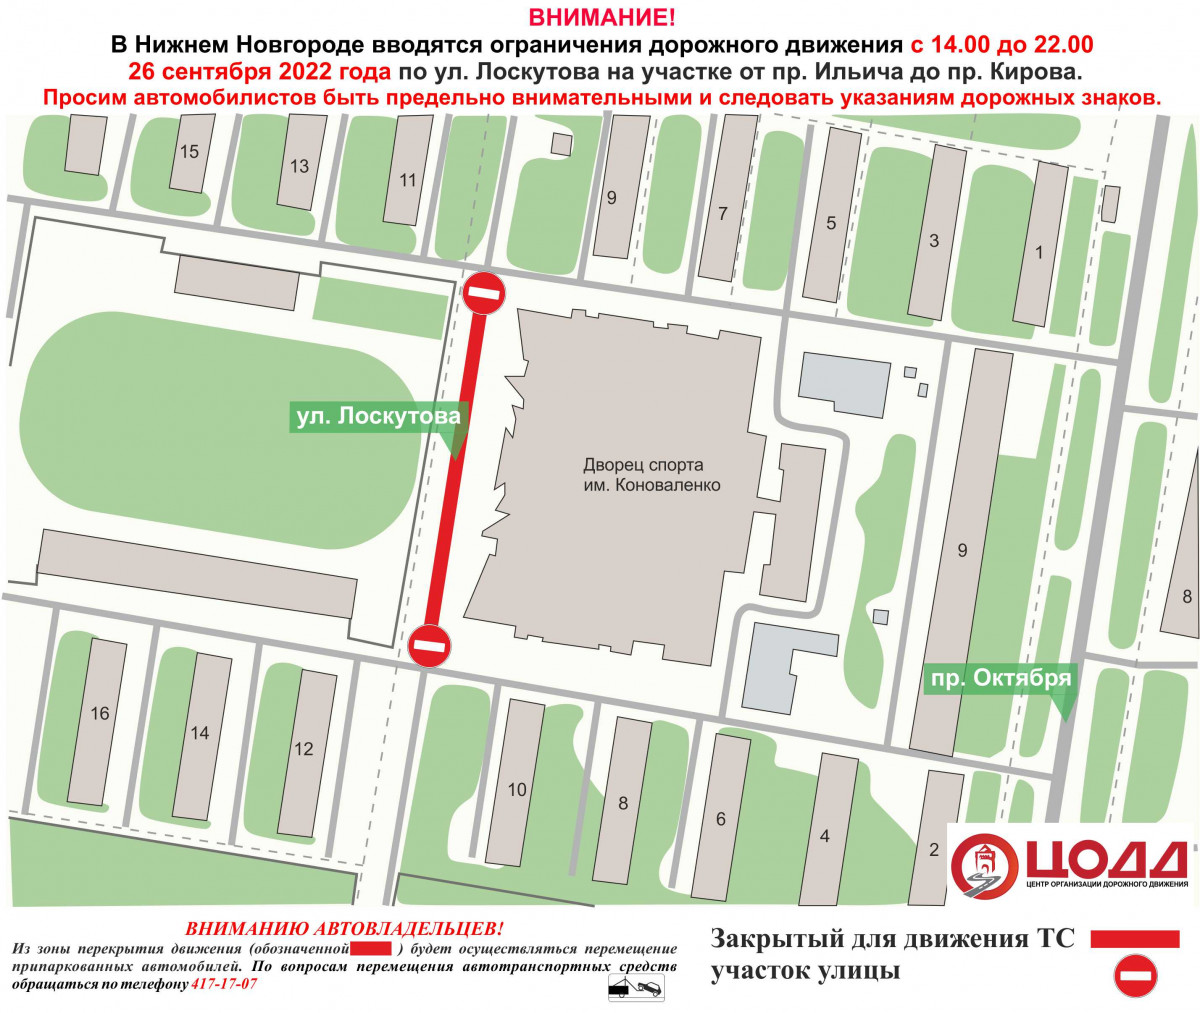 Движение транспорта приостановят на участке дороги на улице Лоскутова 26 сентября